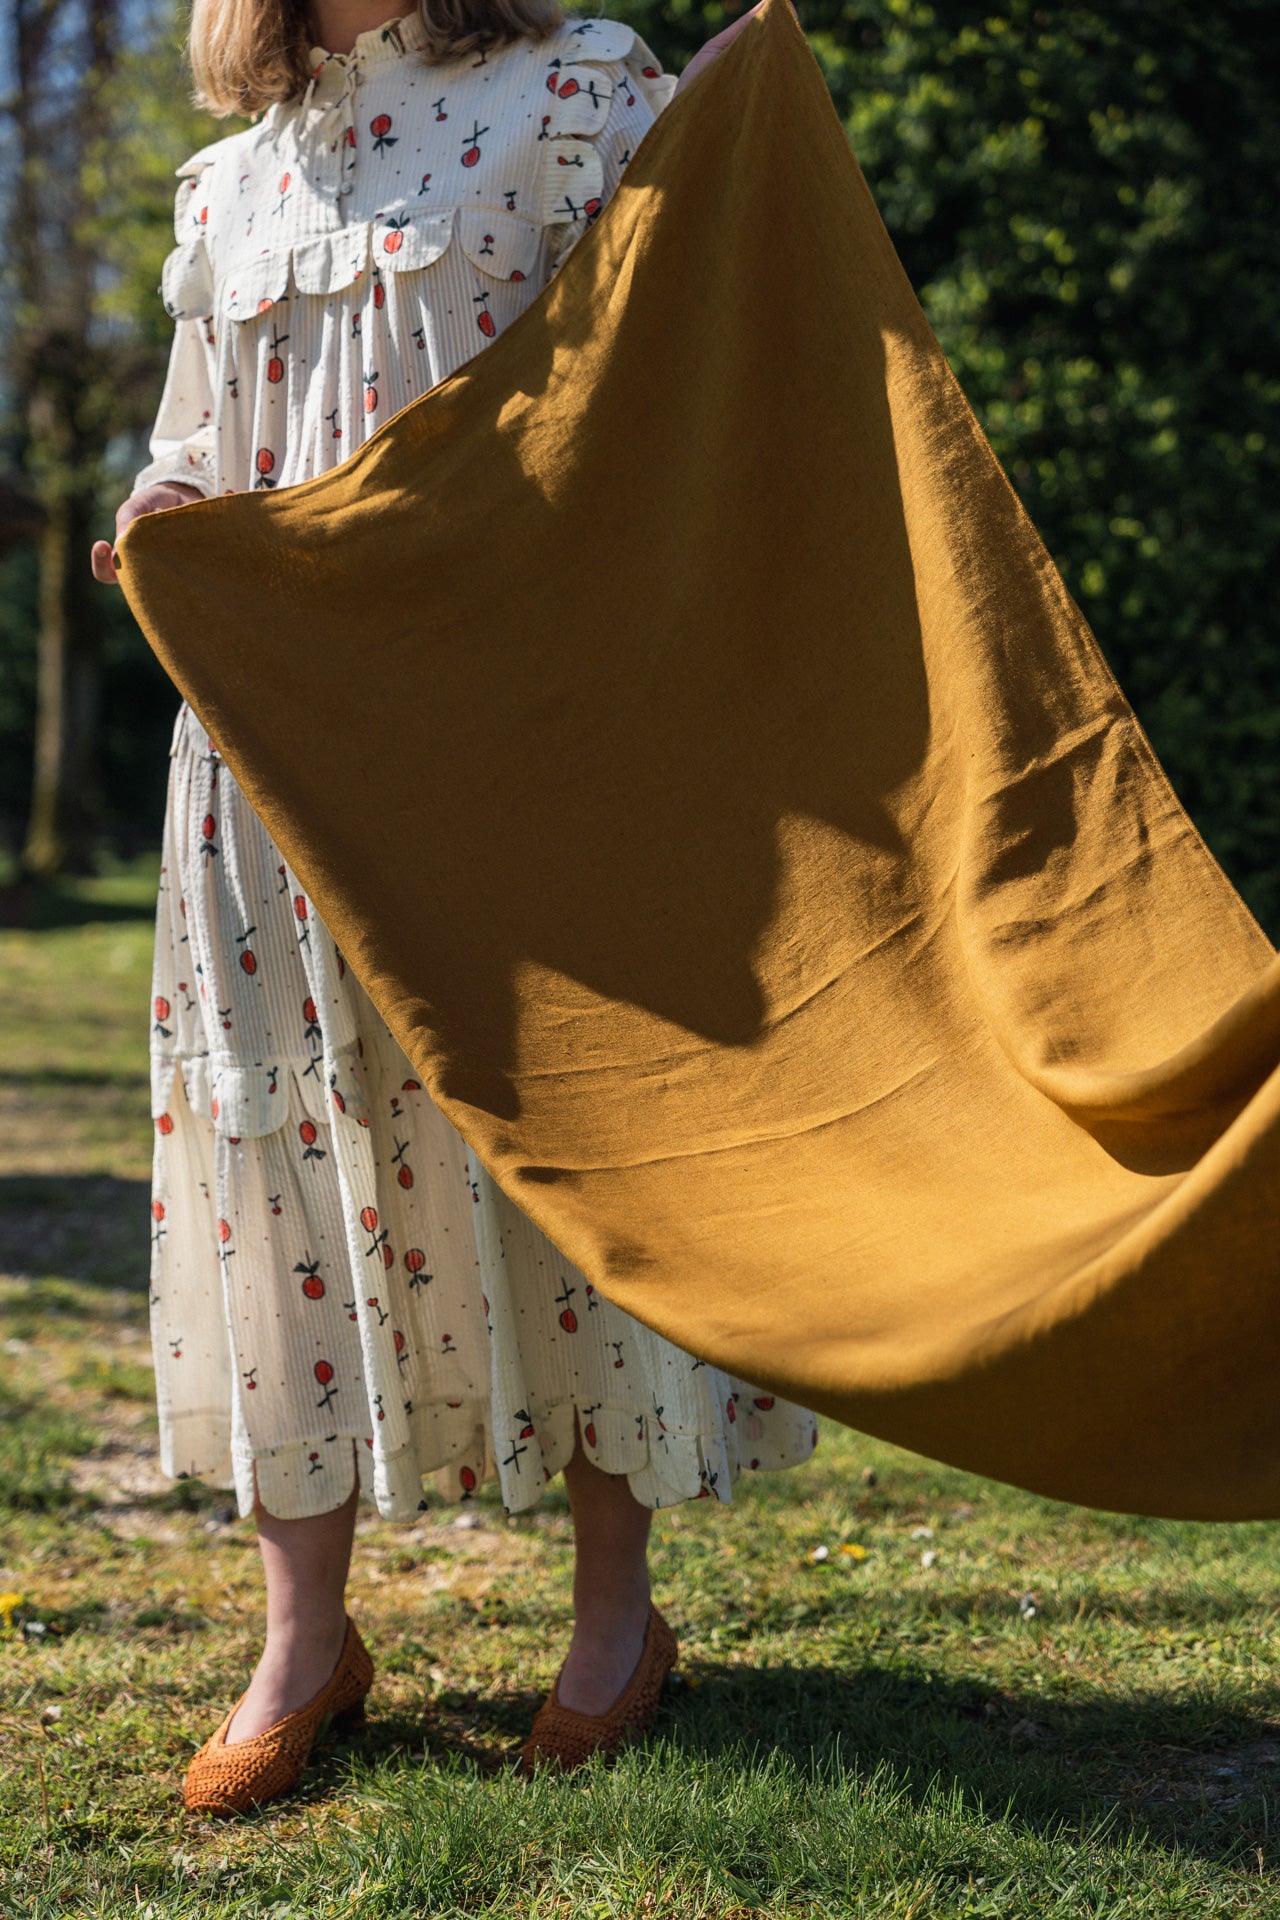 The Khaki linen tablecloth